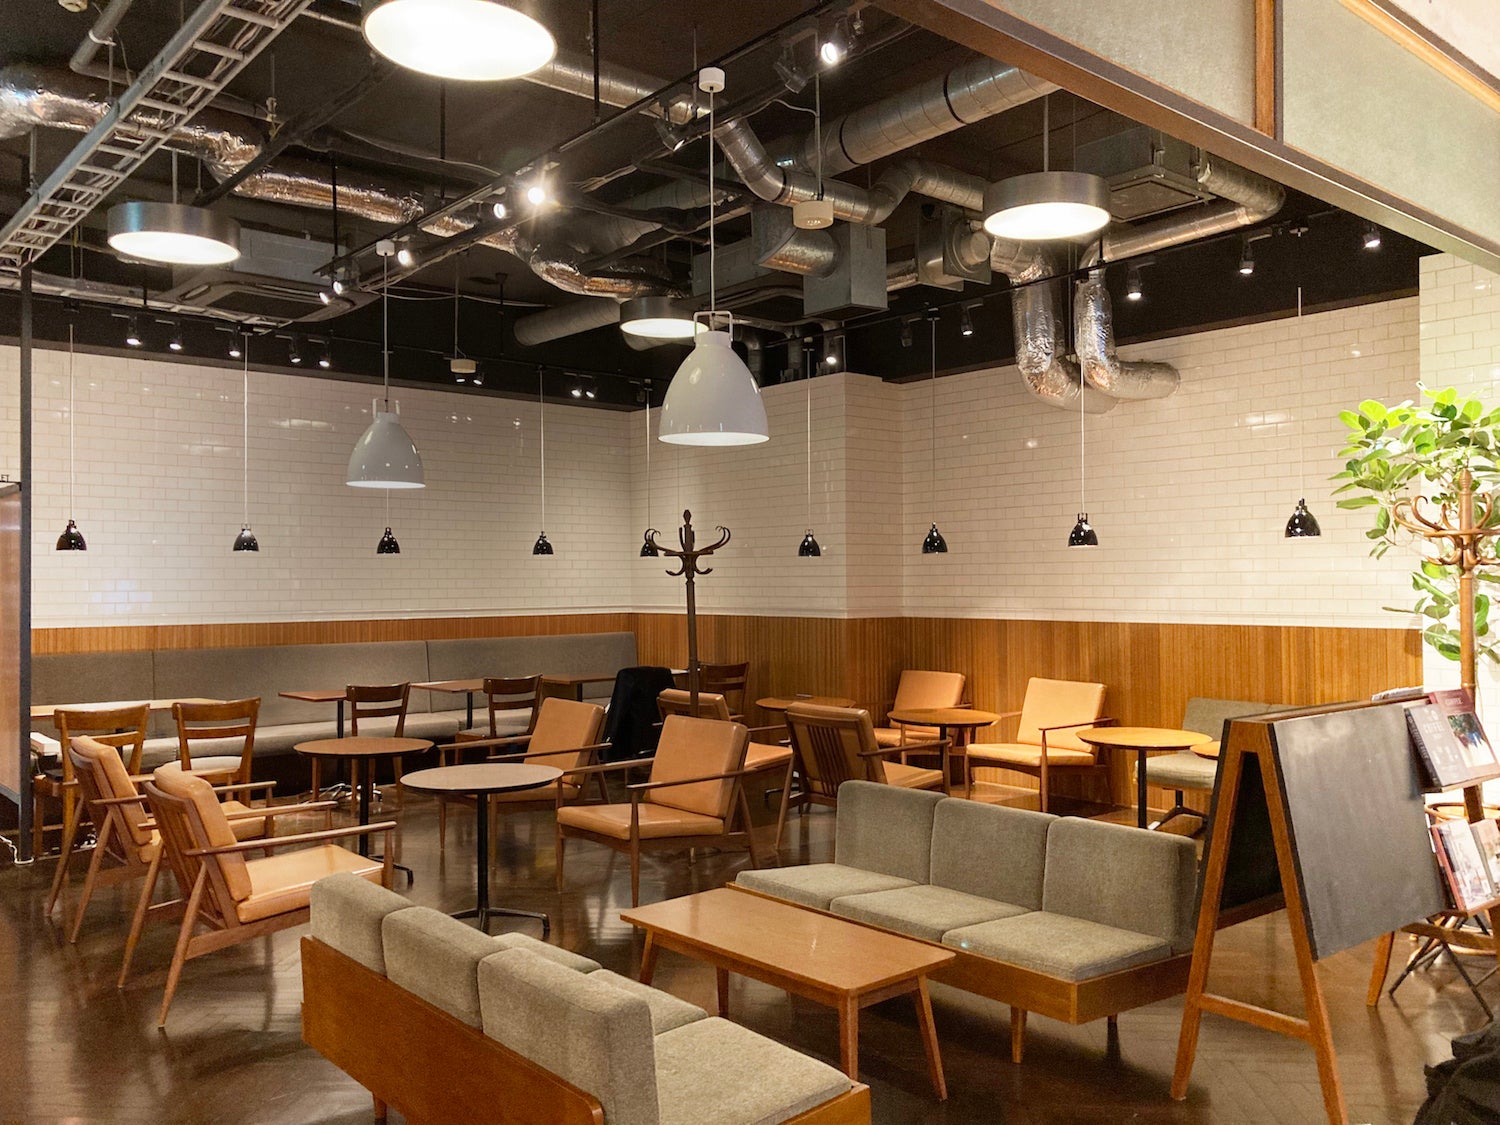 丸山珈琲西麻布店がリニューアルオープン!! スイーツやフードメニューも登場し、スペシャルティコーヒーをゆっくり楽しめる贅沢な空間と時間をご提供します